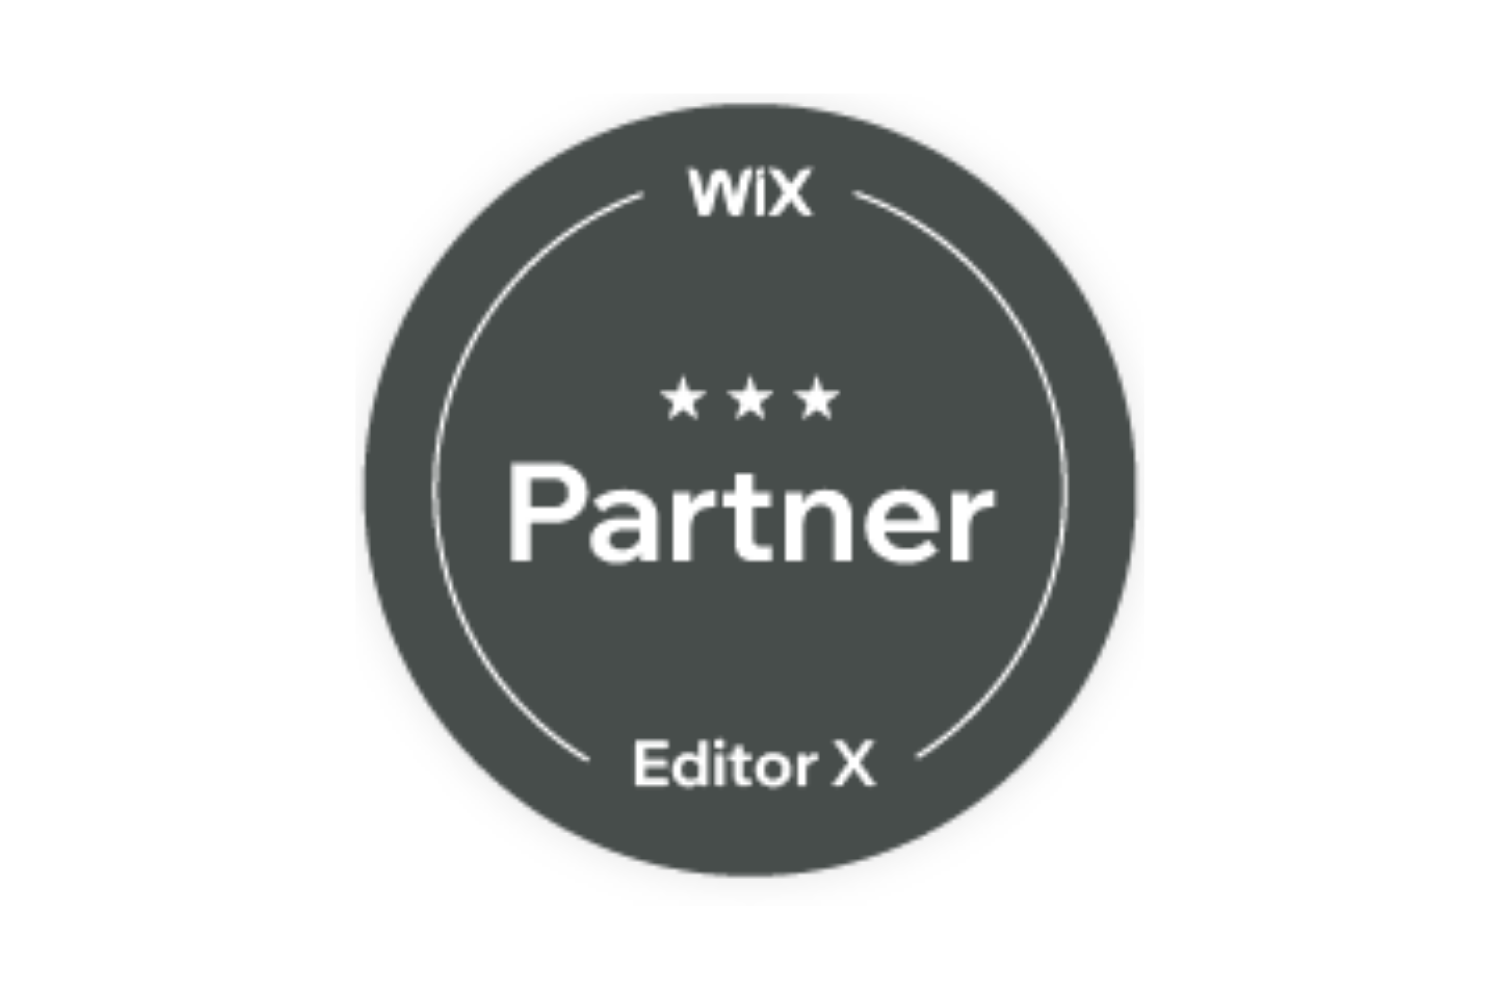 Wix Partner Logo.png